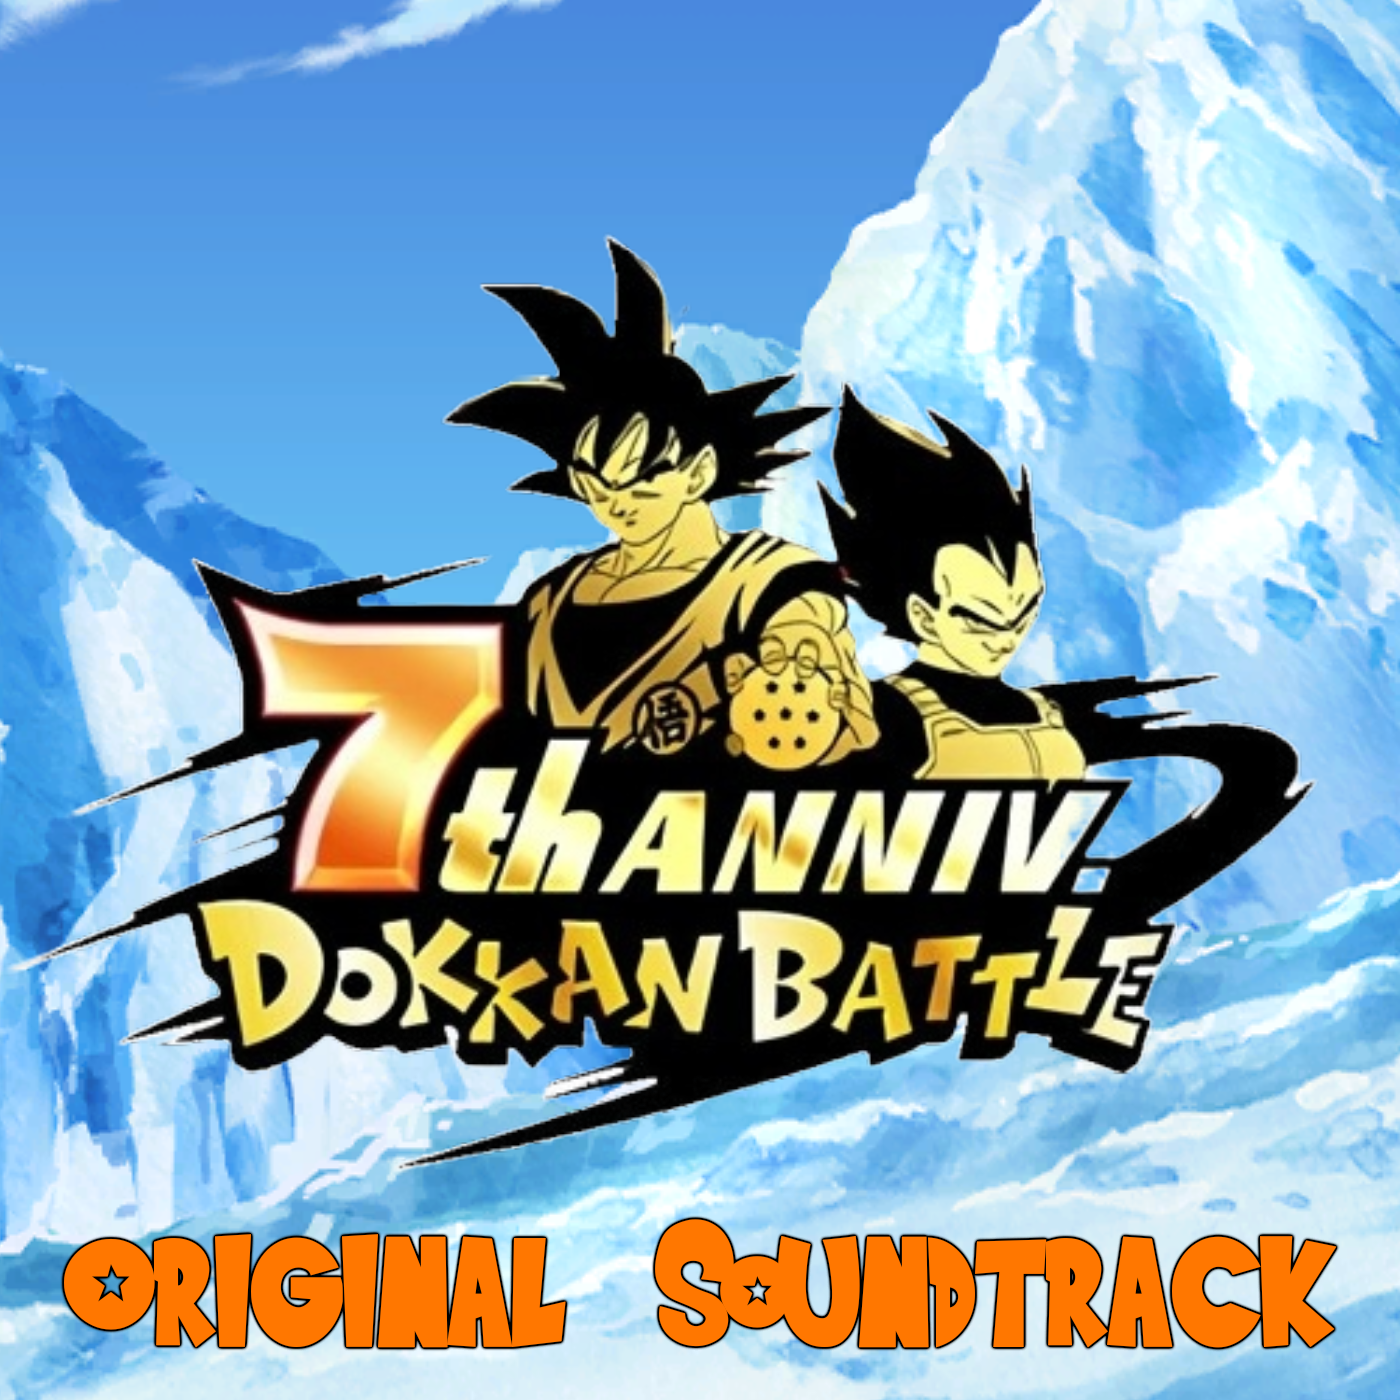 Dragon Ball Z: Dokkan Battle chegou hoje ao iOS e Android